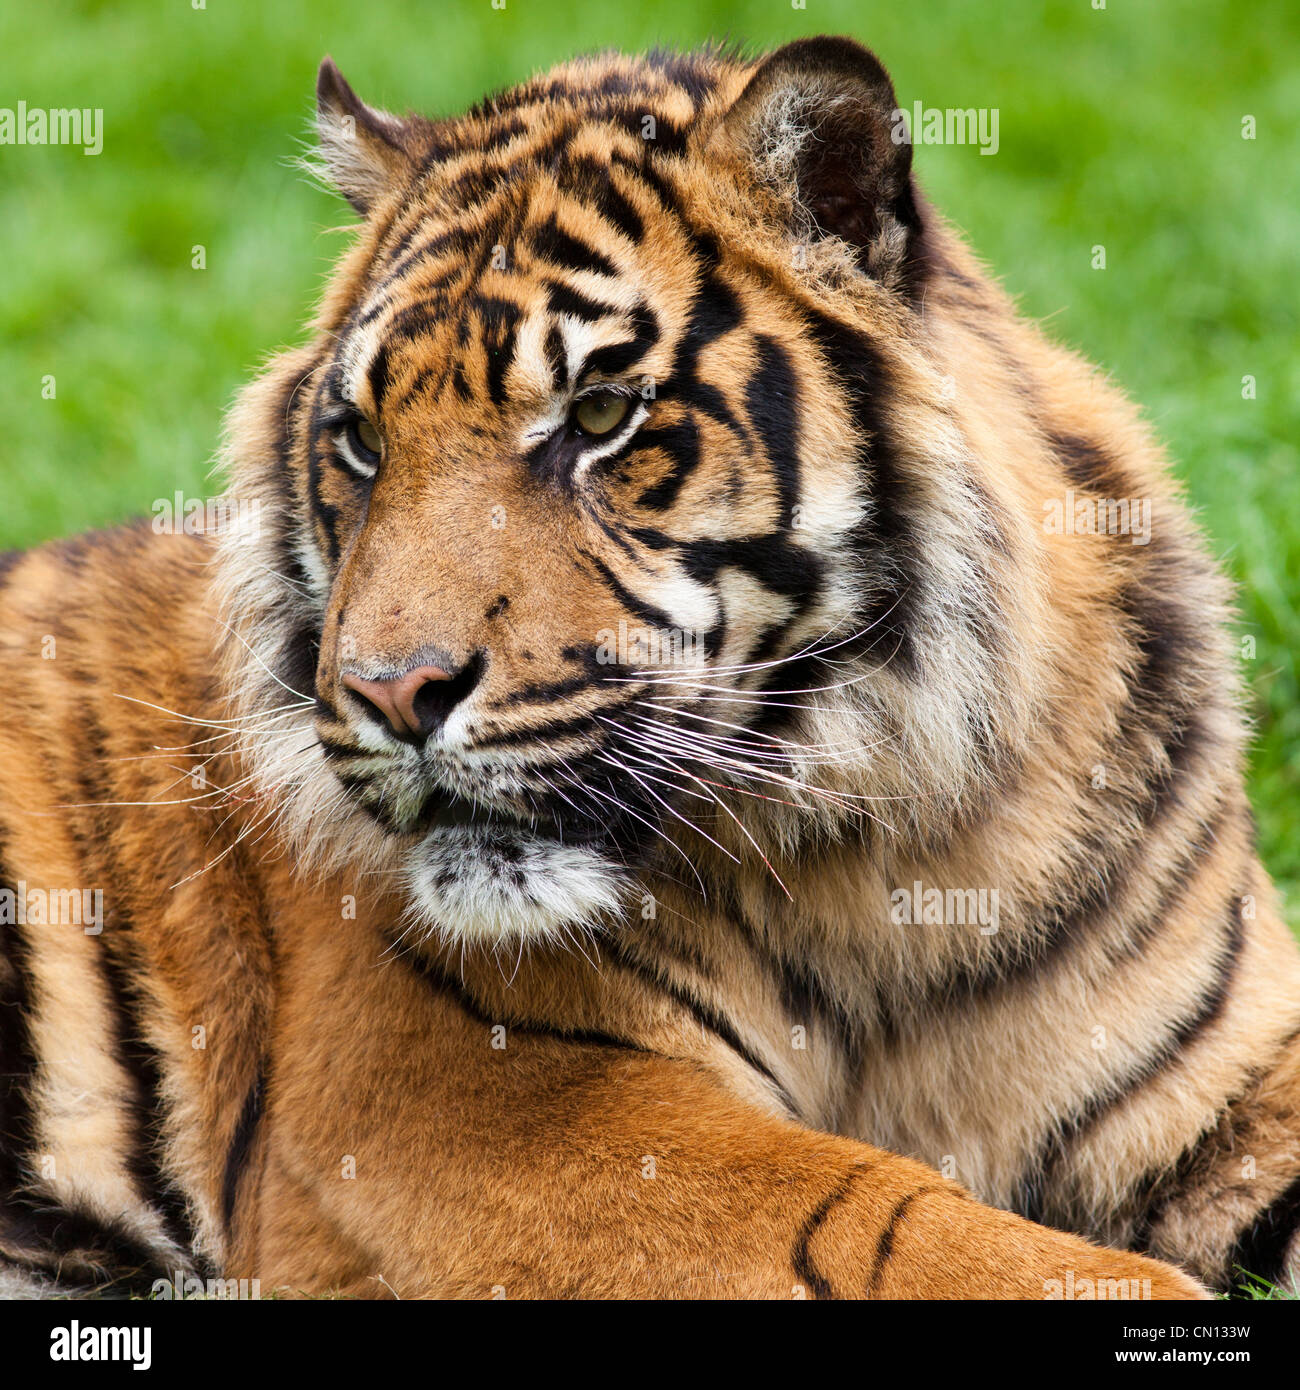 Tiger - Panthera tigris - close up portrait Stock Photo